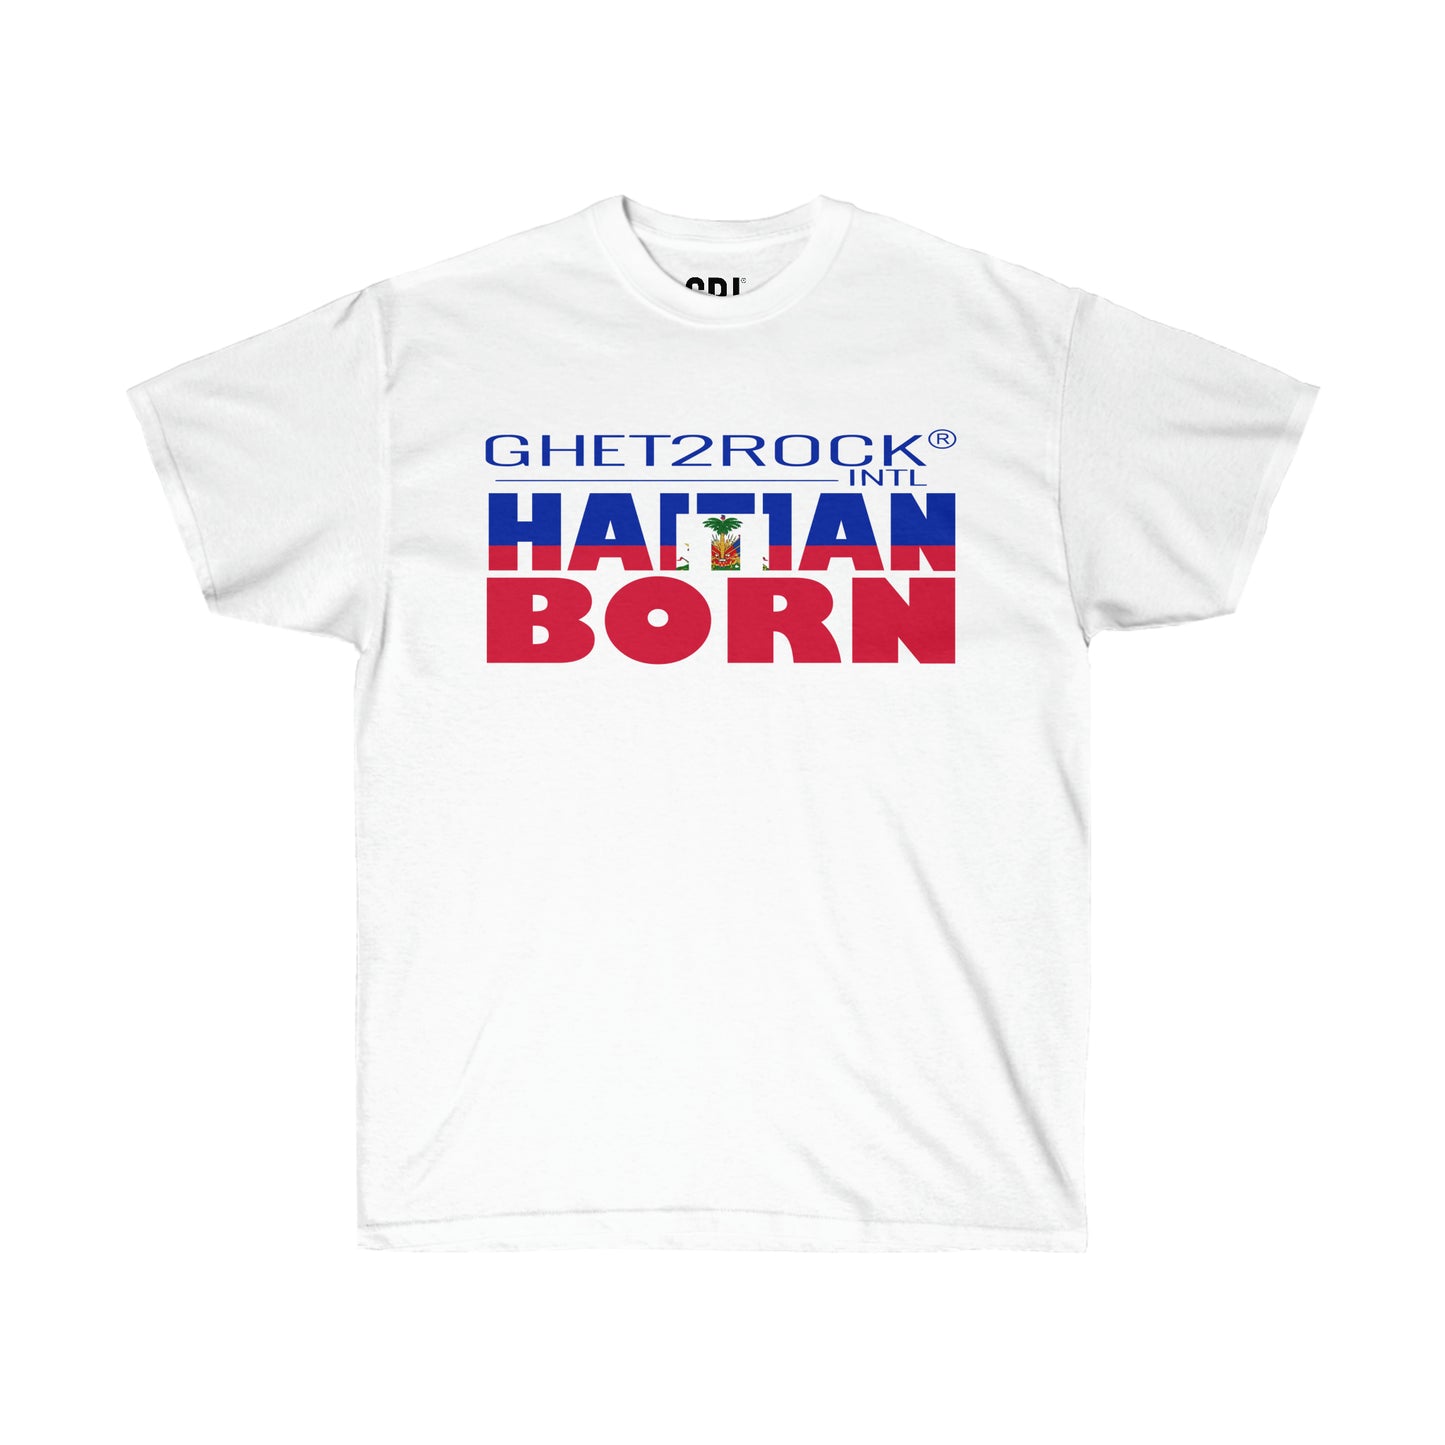 Haitian Born Unisex Ultra Cotton Tee